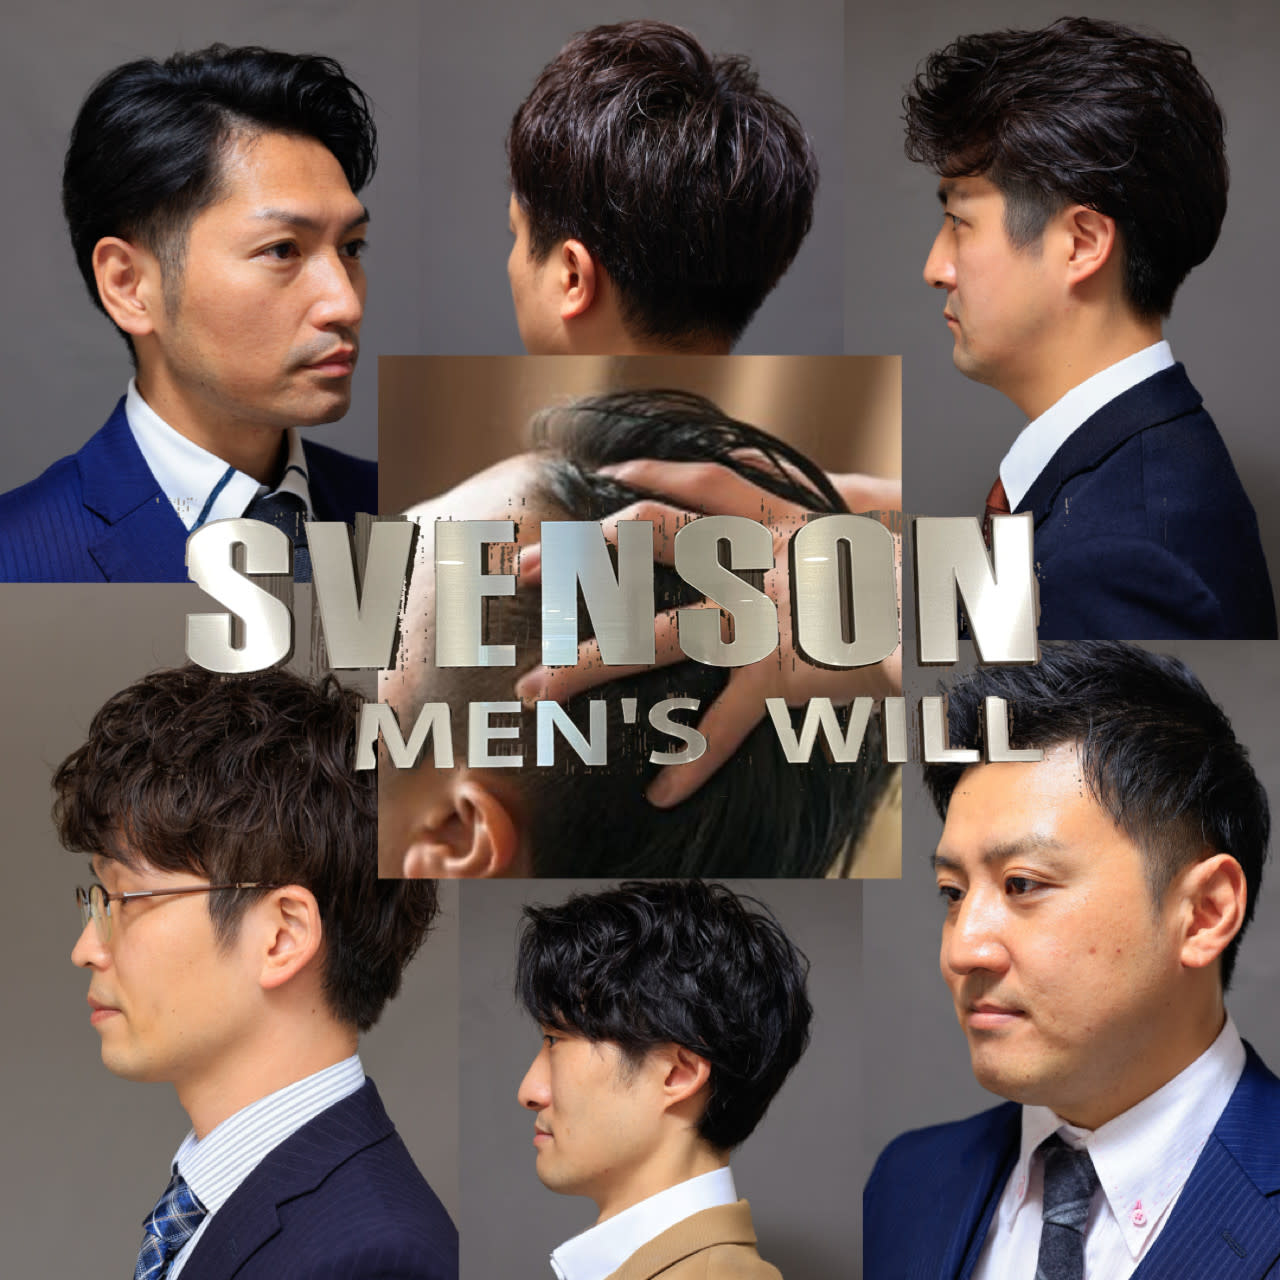 MEN'S WILL by SVENSON 名古屋スタジオのアイキャッチ画像